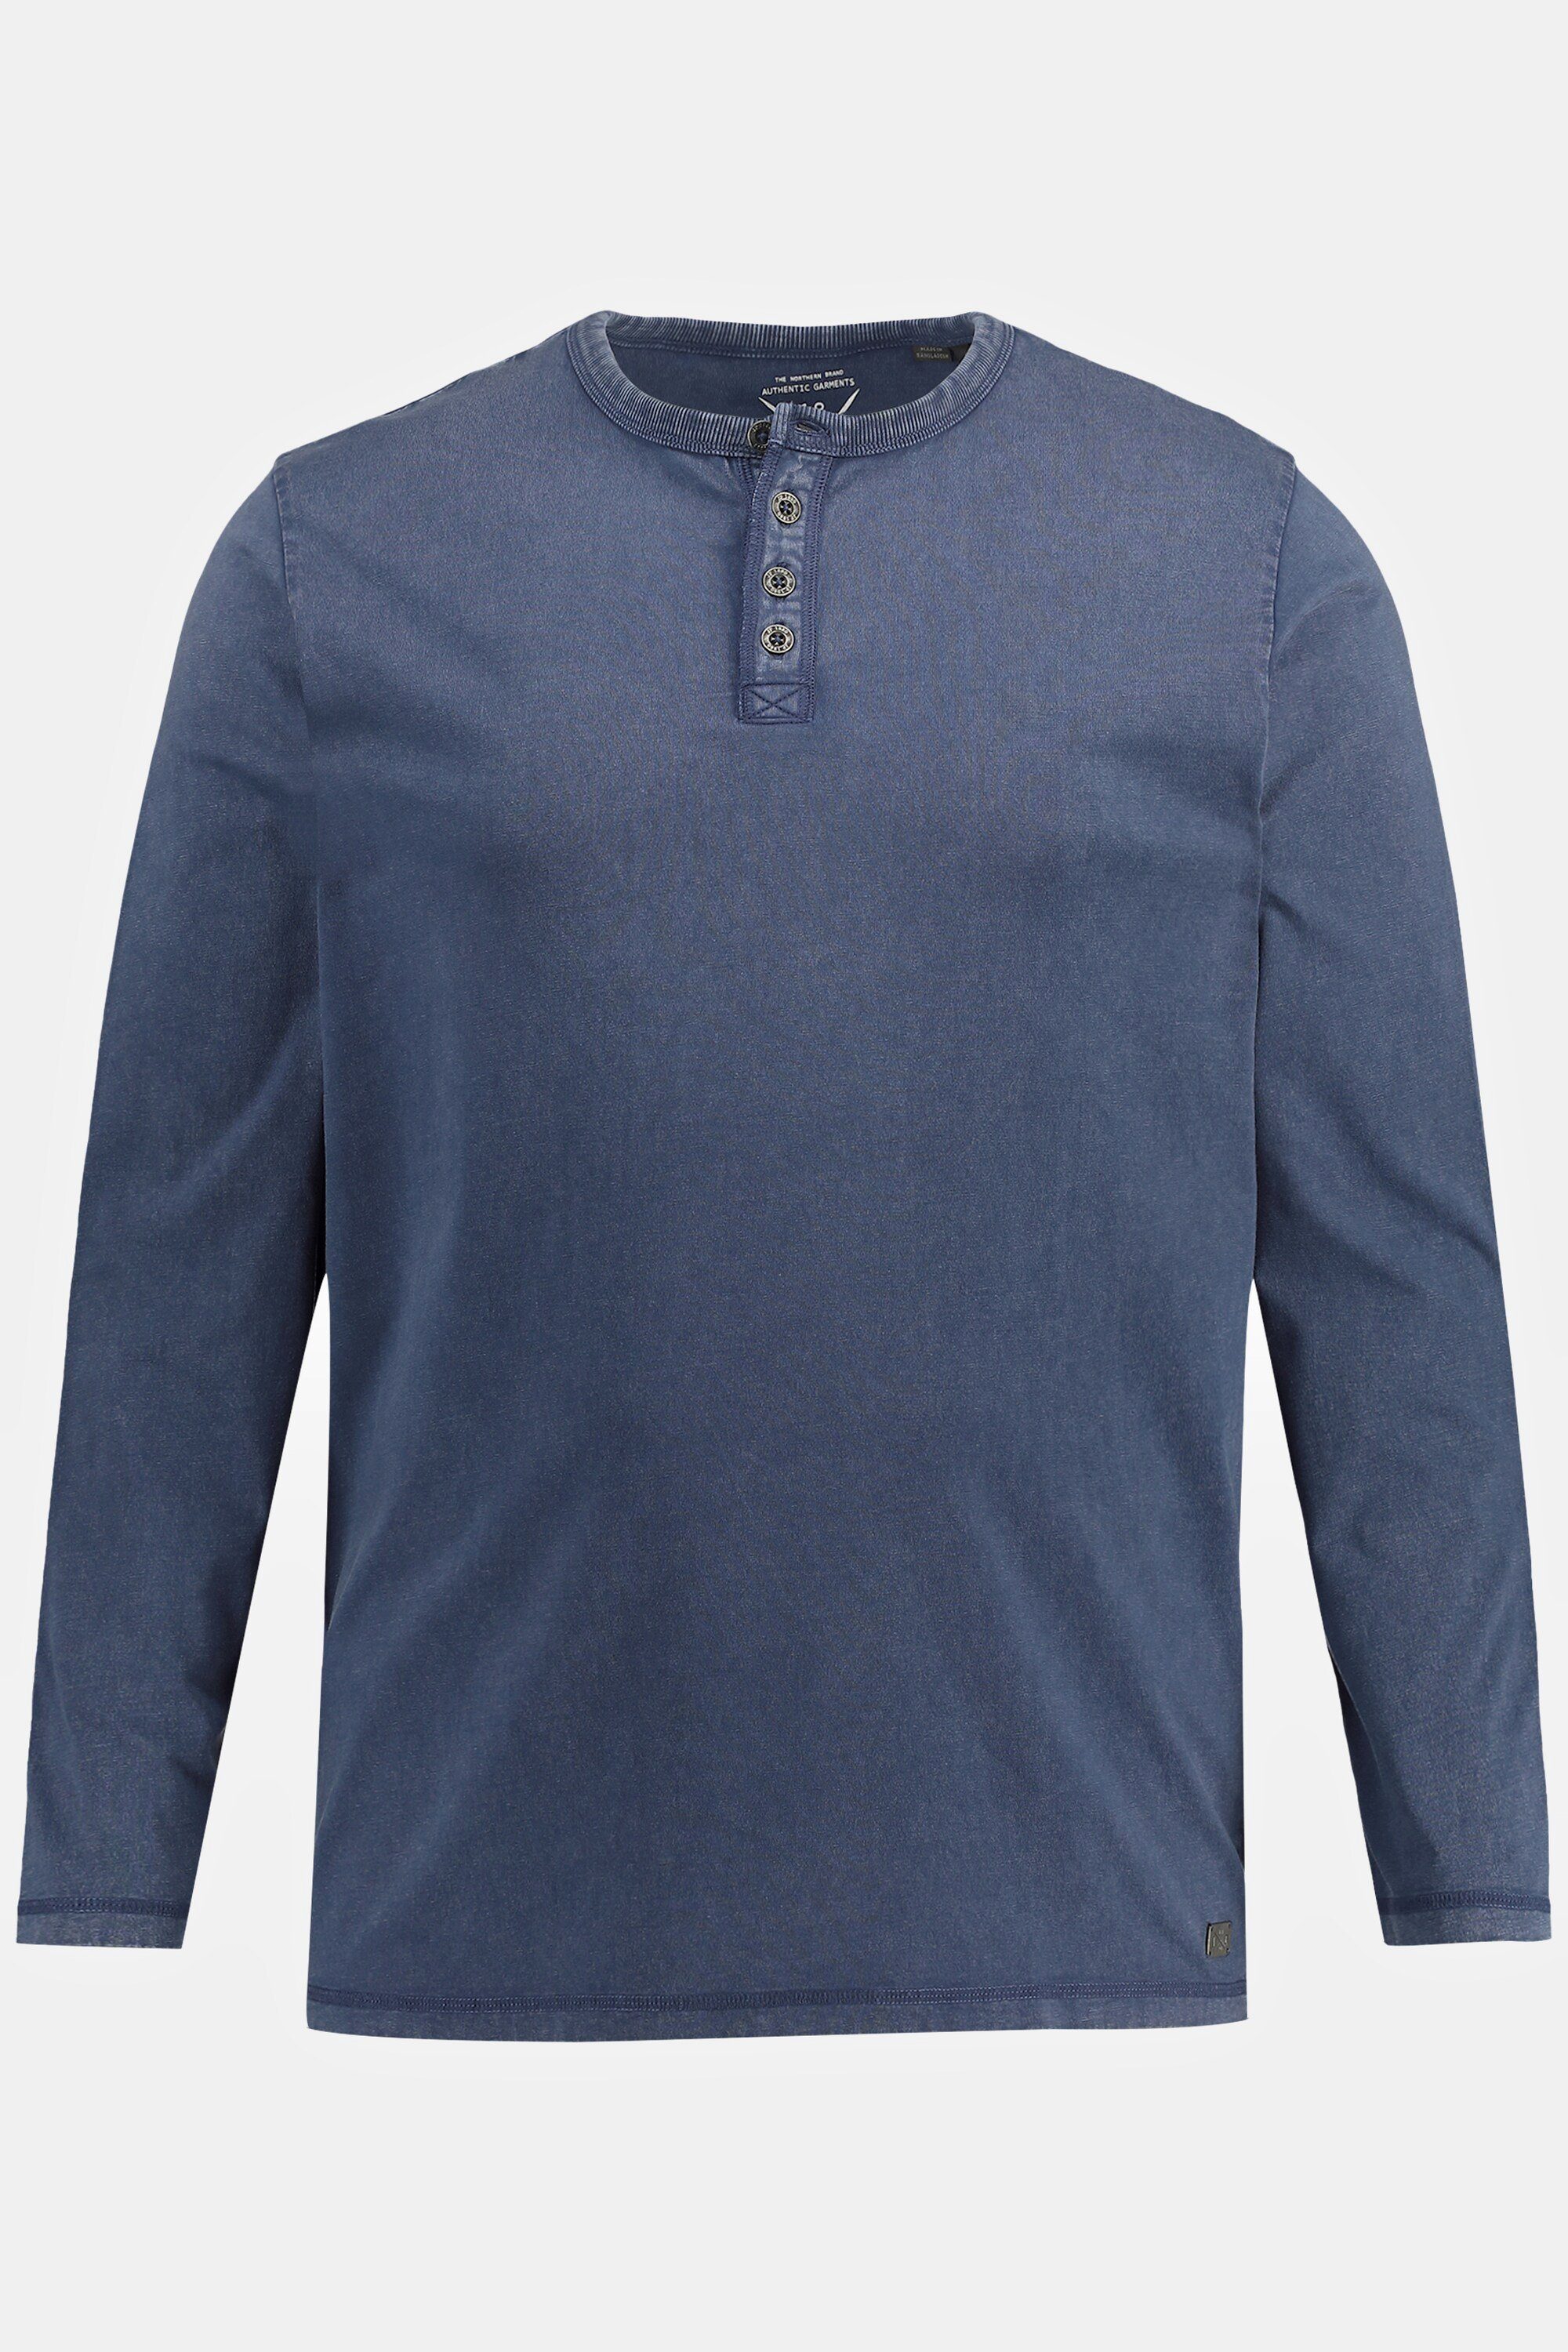 JP1880 T-Shirt Henley Langarm Vintage tiefblau Rundhals Look Knopfleiste